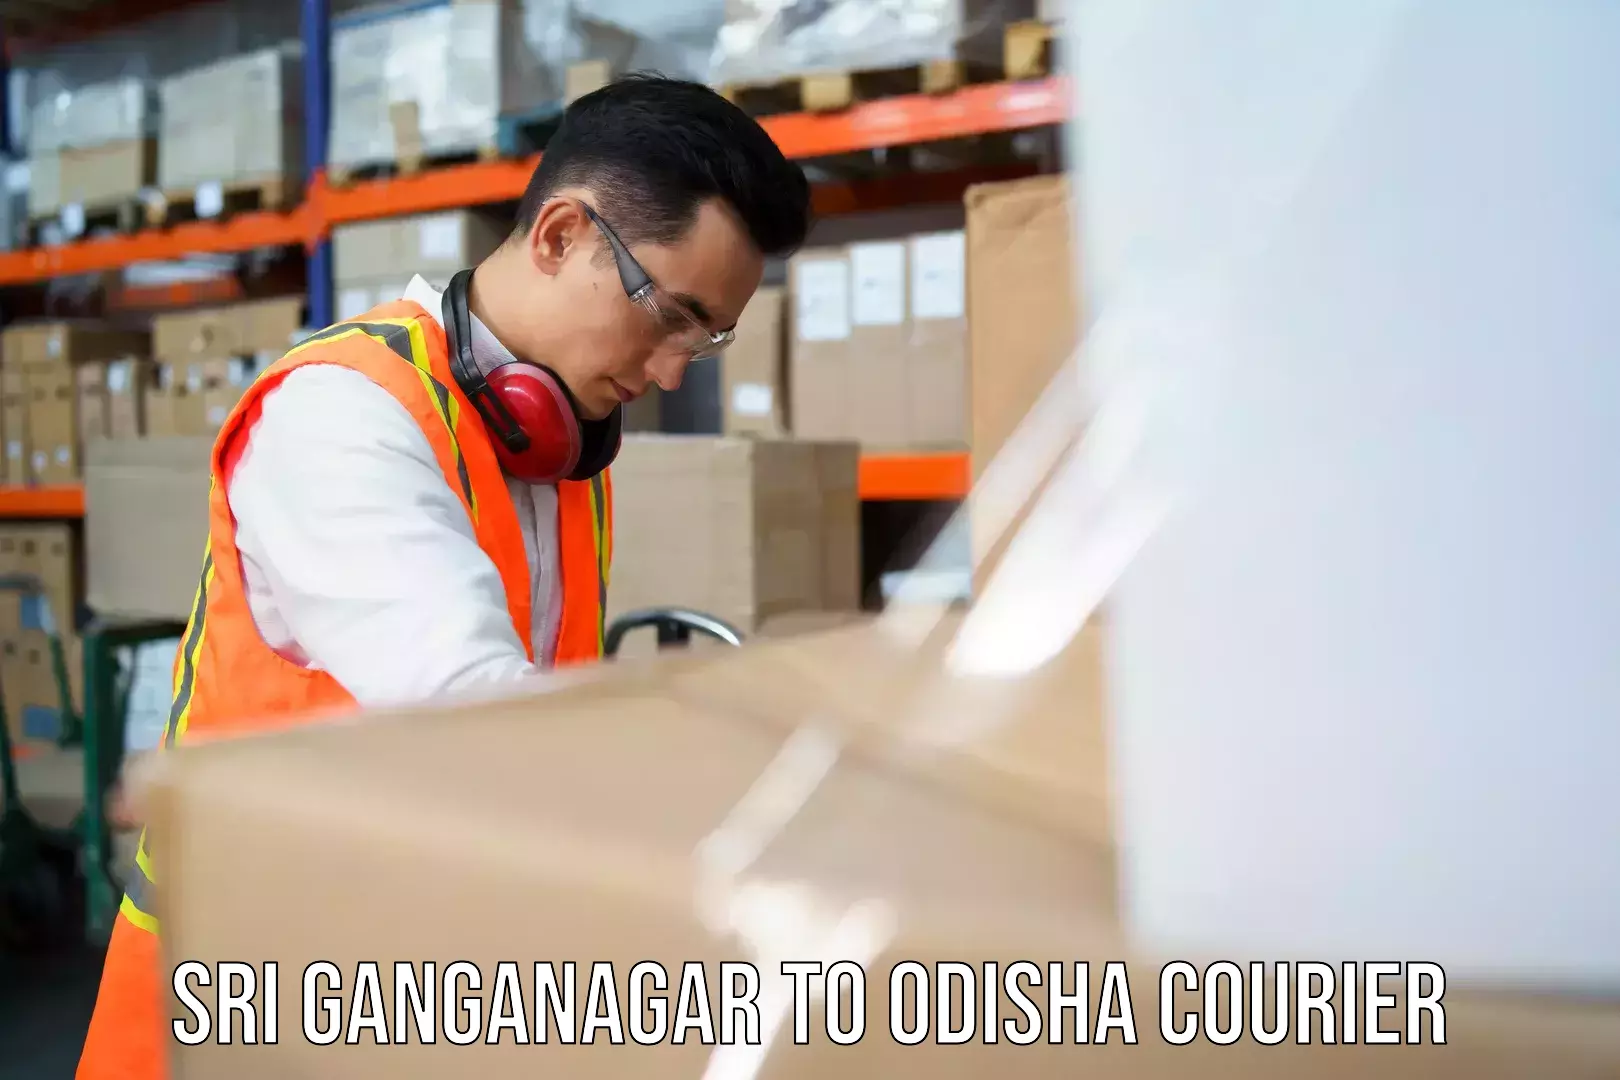 Flexible courier rates Sri Ganganagar to Jeypore